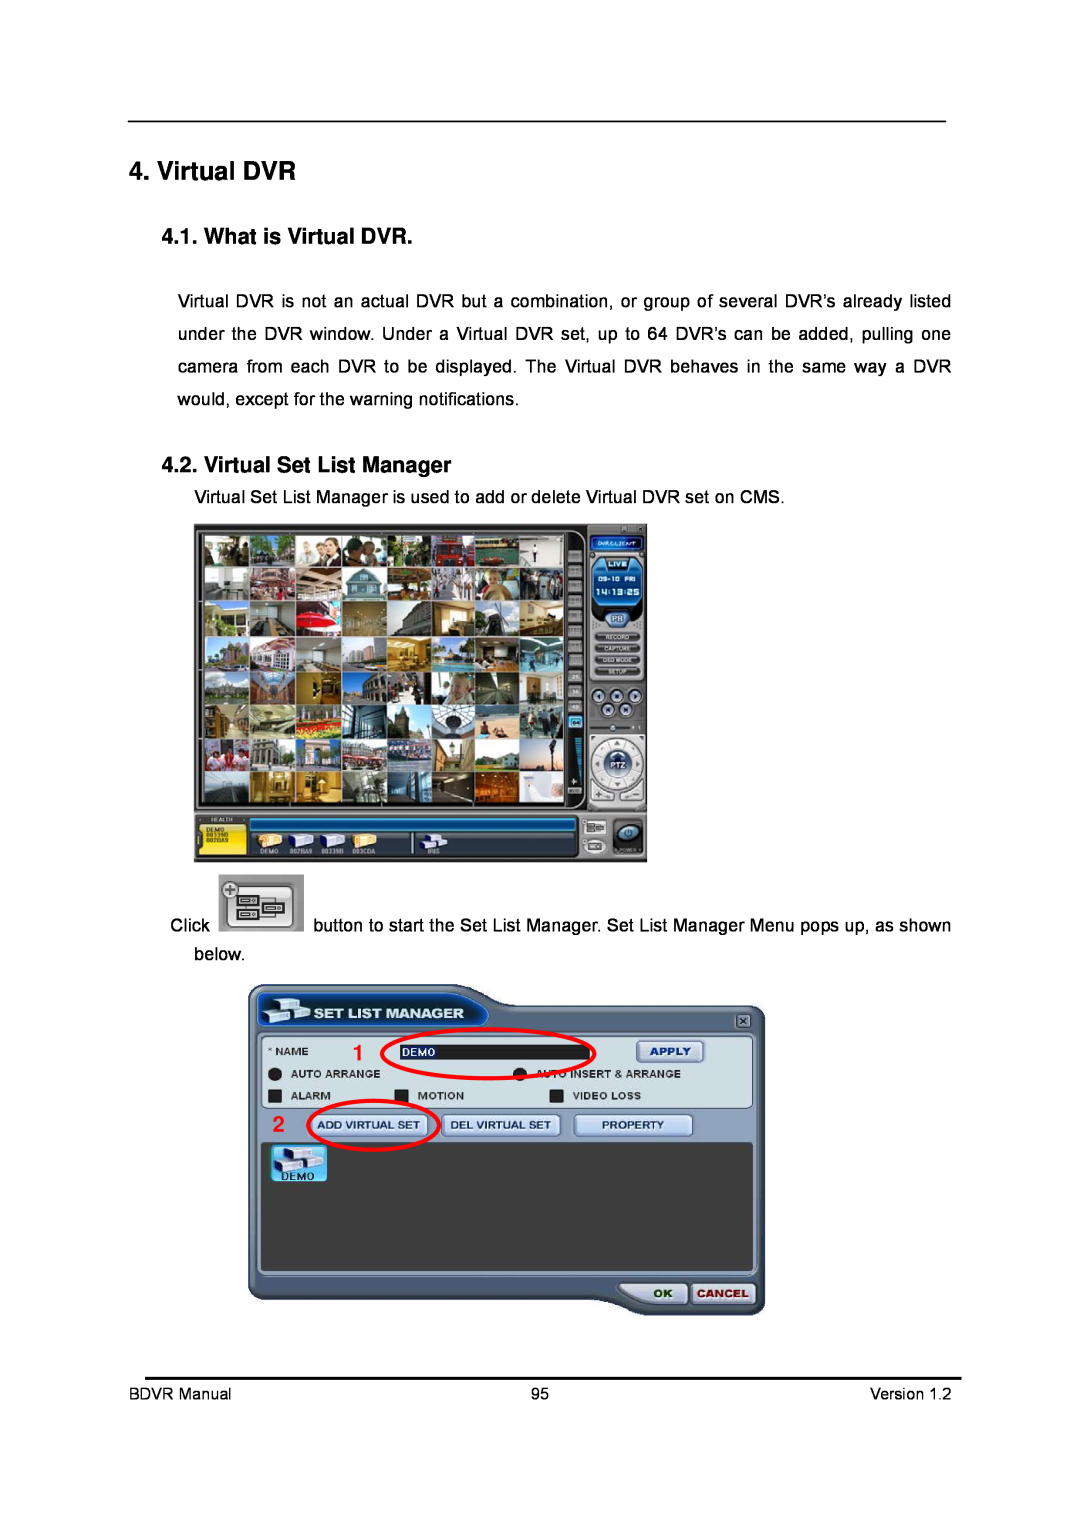 Genie BDVR-8, BDVR-16, BDVR-4 manual What is Virtual DVR, Virtual Set List Manager 